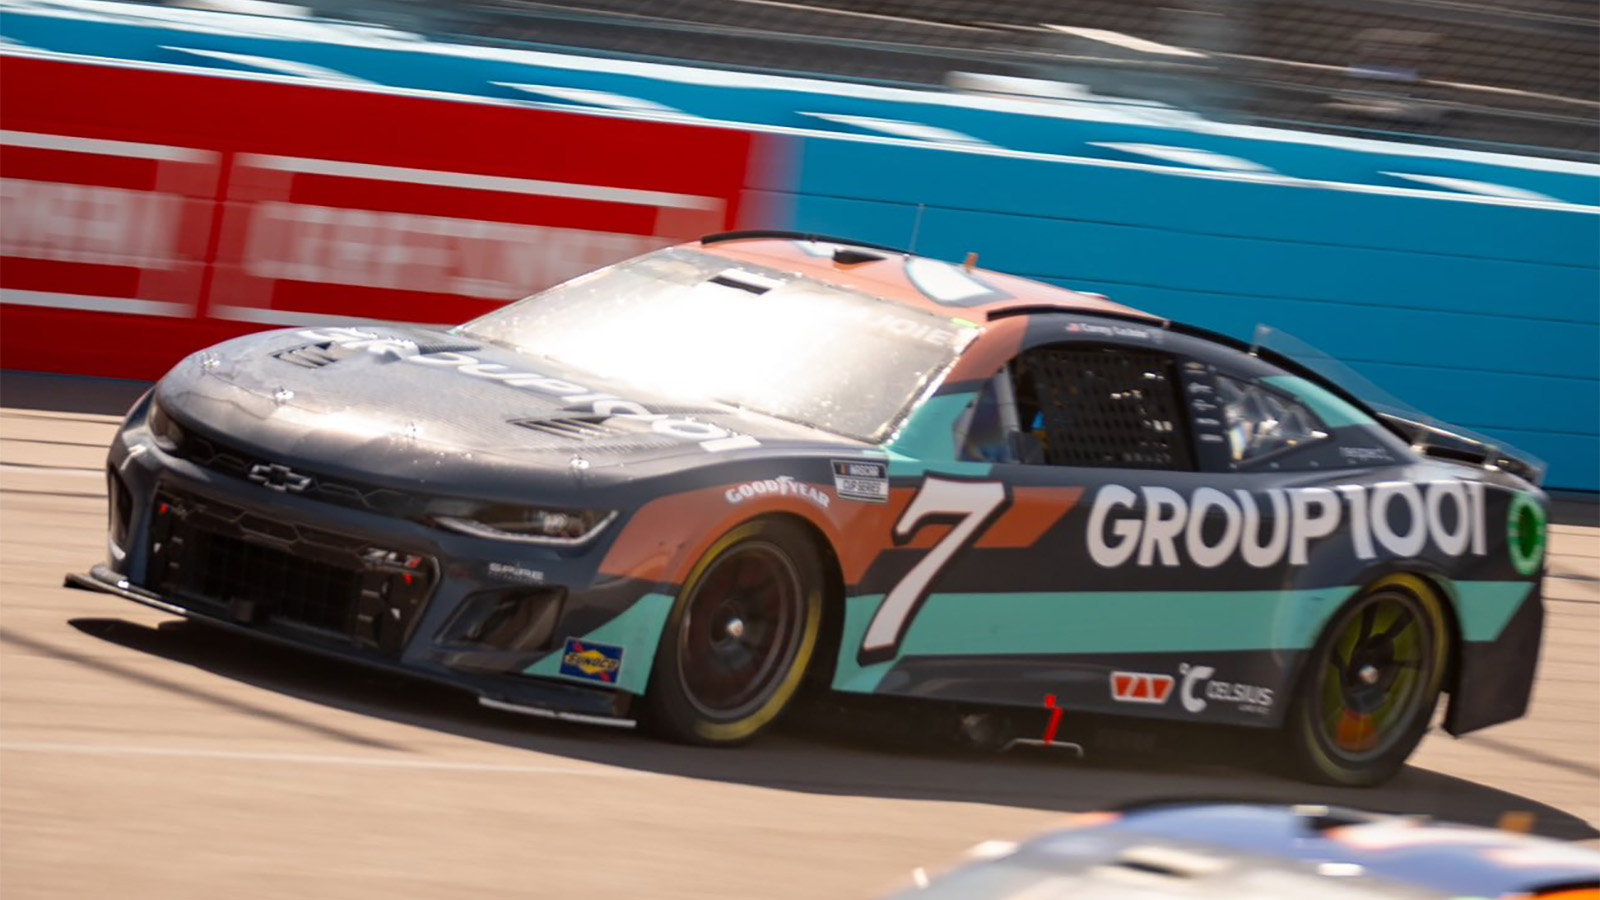 Corey LaJoie Group1001 paint scheme Spire Motorsports 2024 NASCAR Cup Series